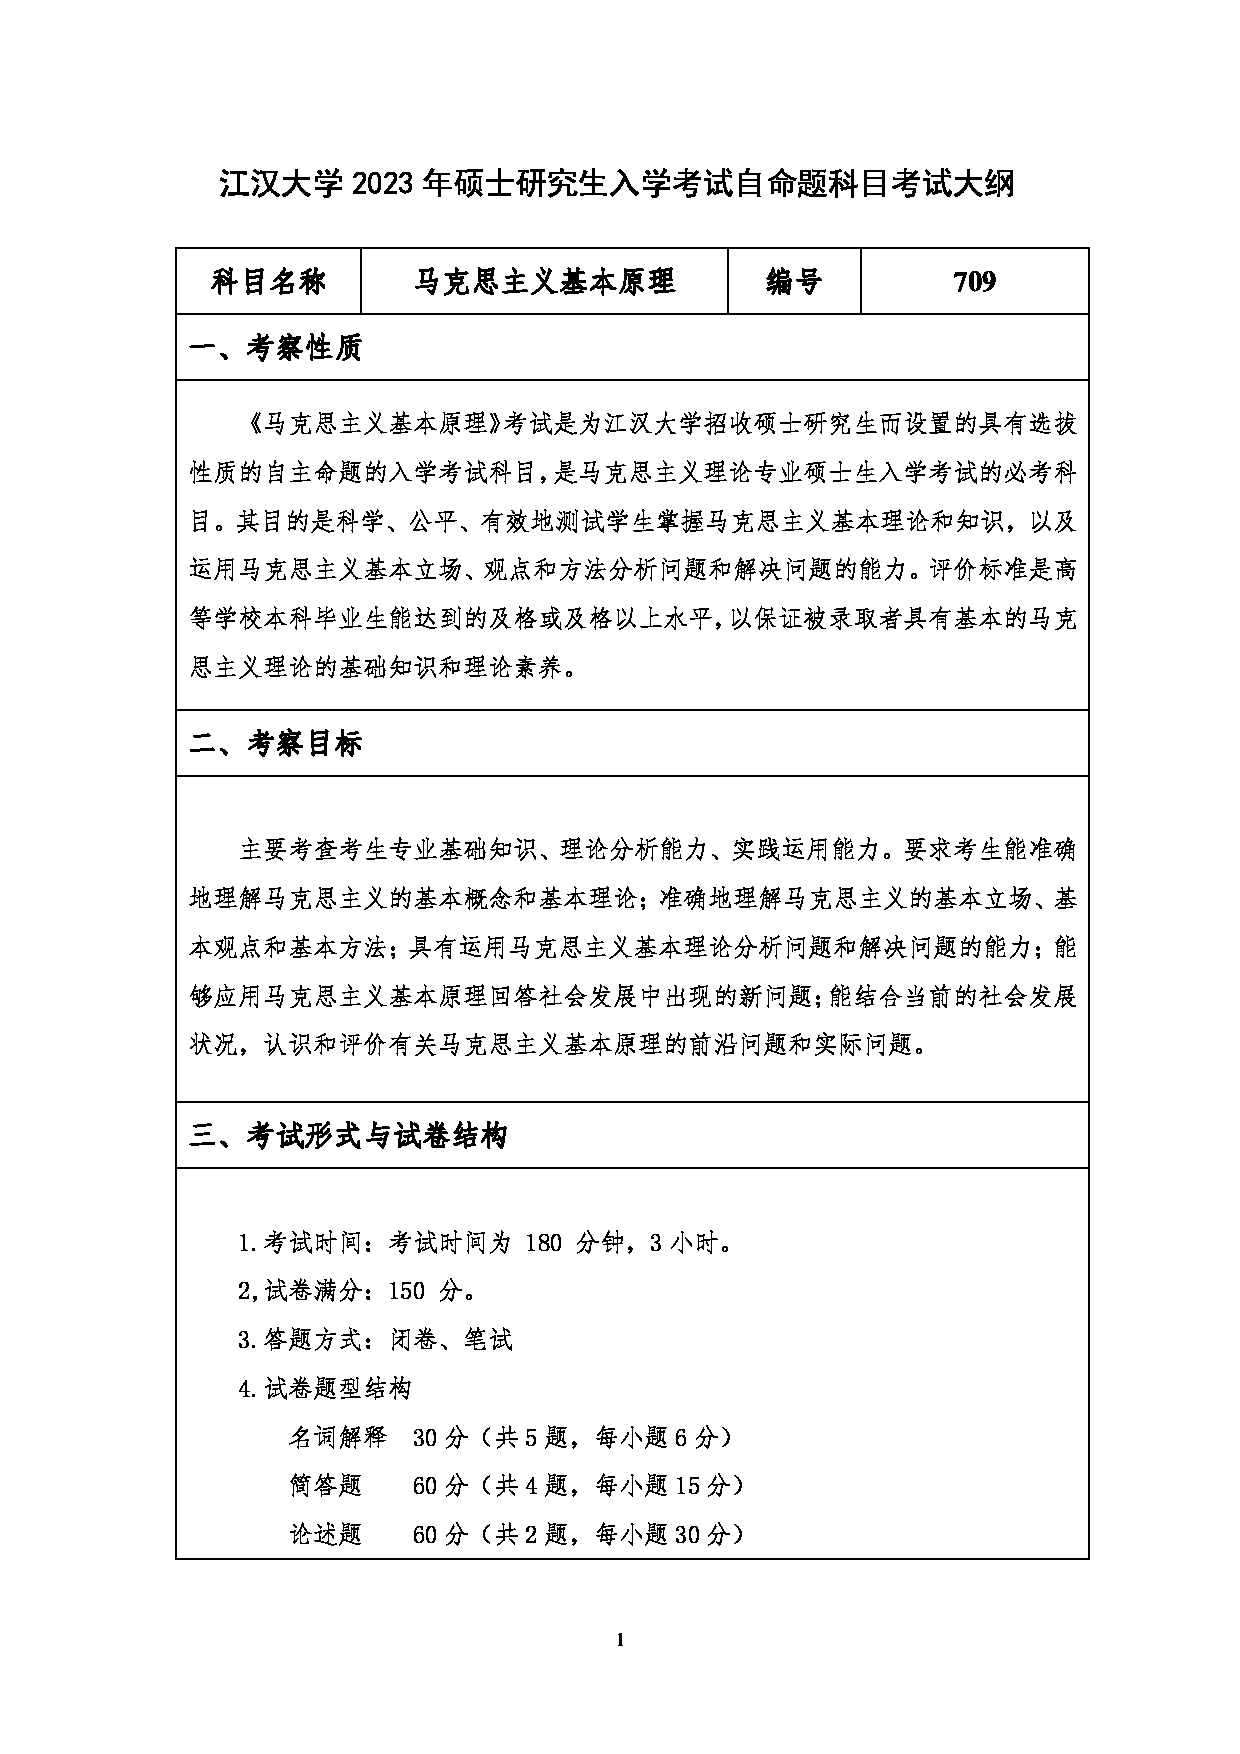 2023考研大纲：江汉大学2023年考研自命题科目 709马克思主义基本原理 考试大纲第1页